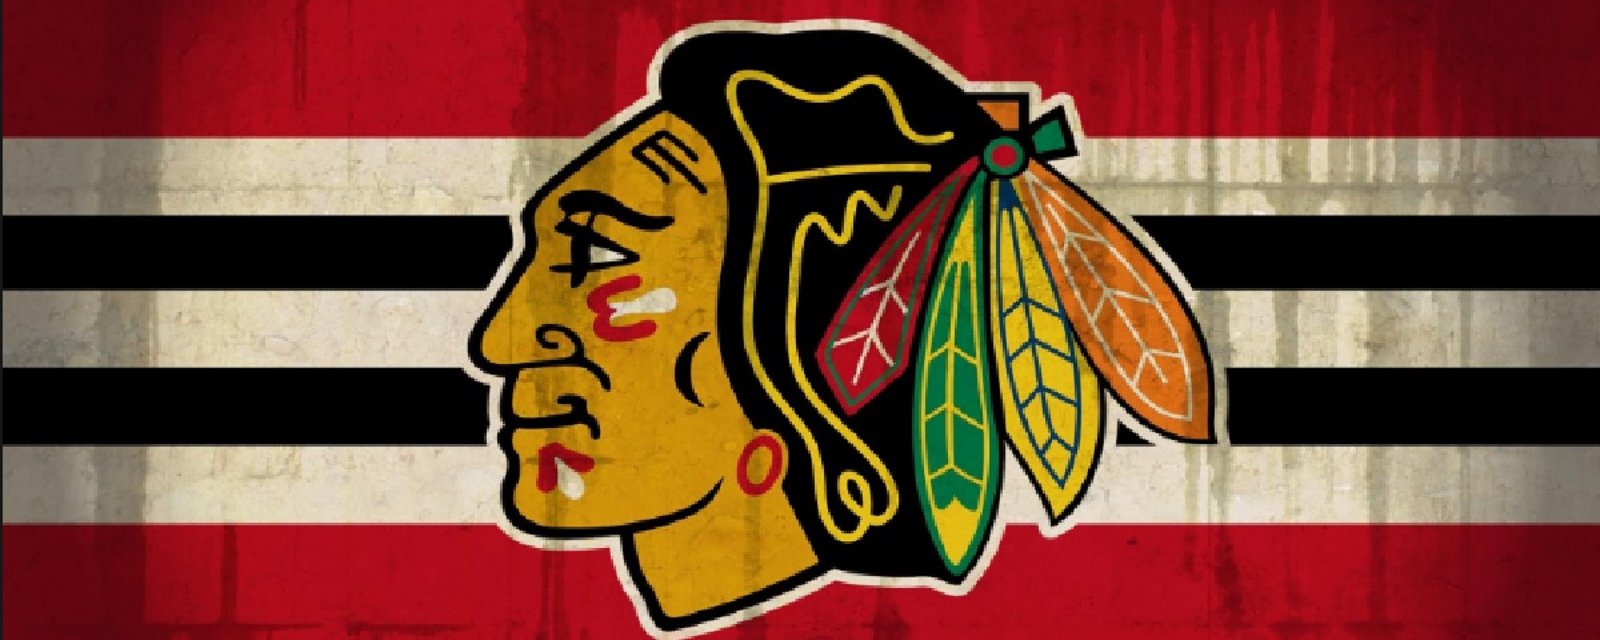 Un nouveau logo est proposé pour les Blackhawks de Chicago